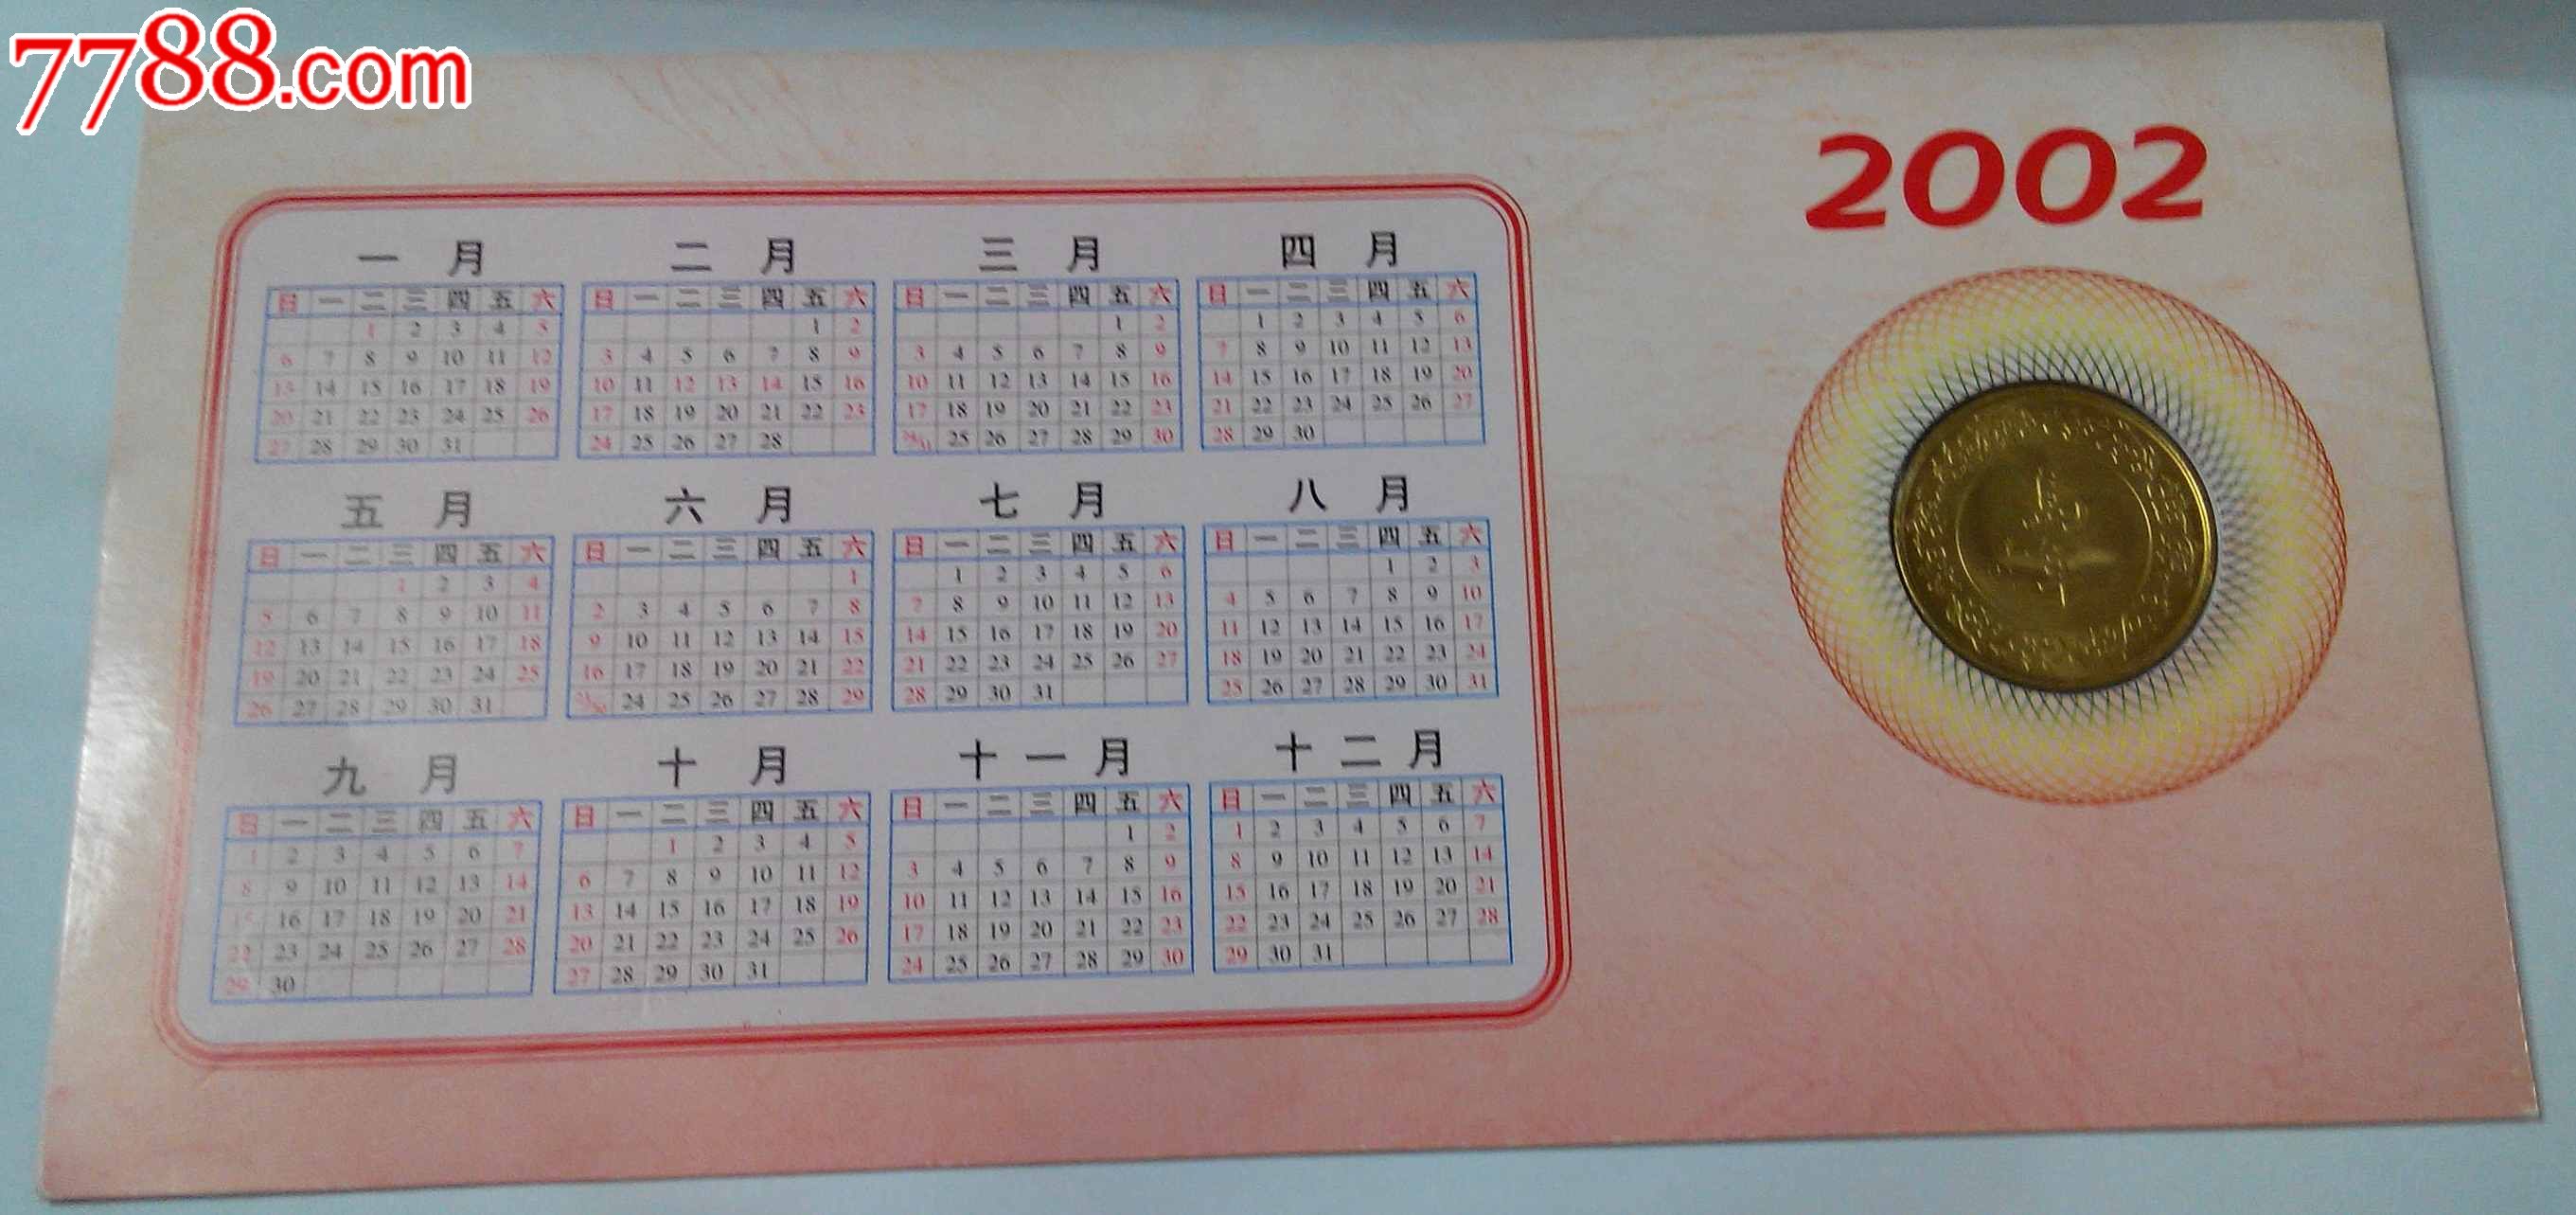 2002年上海造币厂金币贺卡年历片(hh:1234)